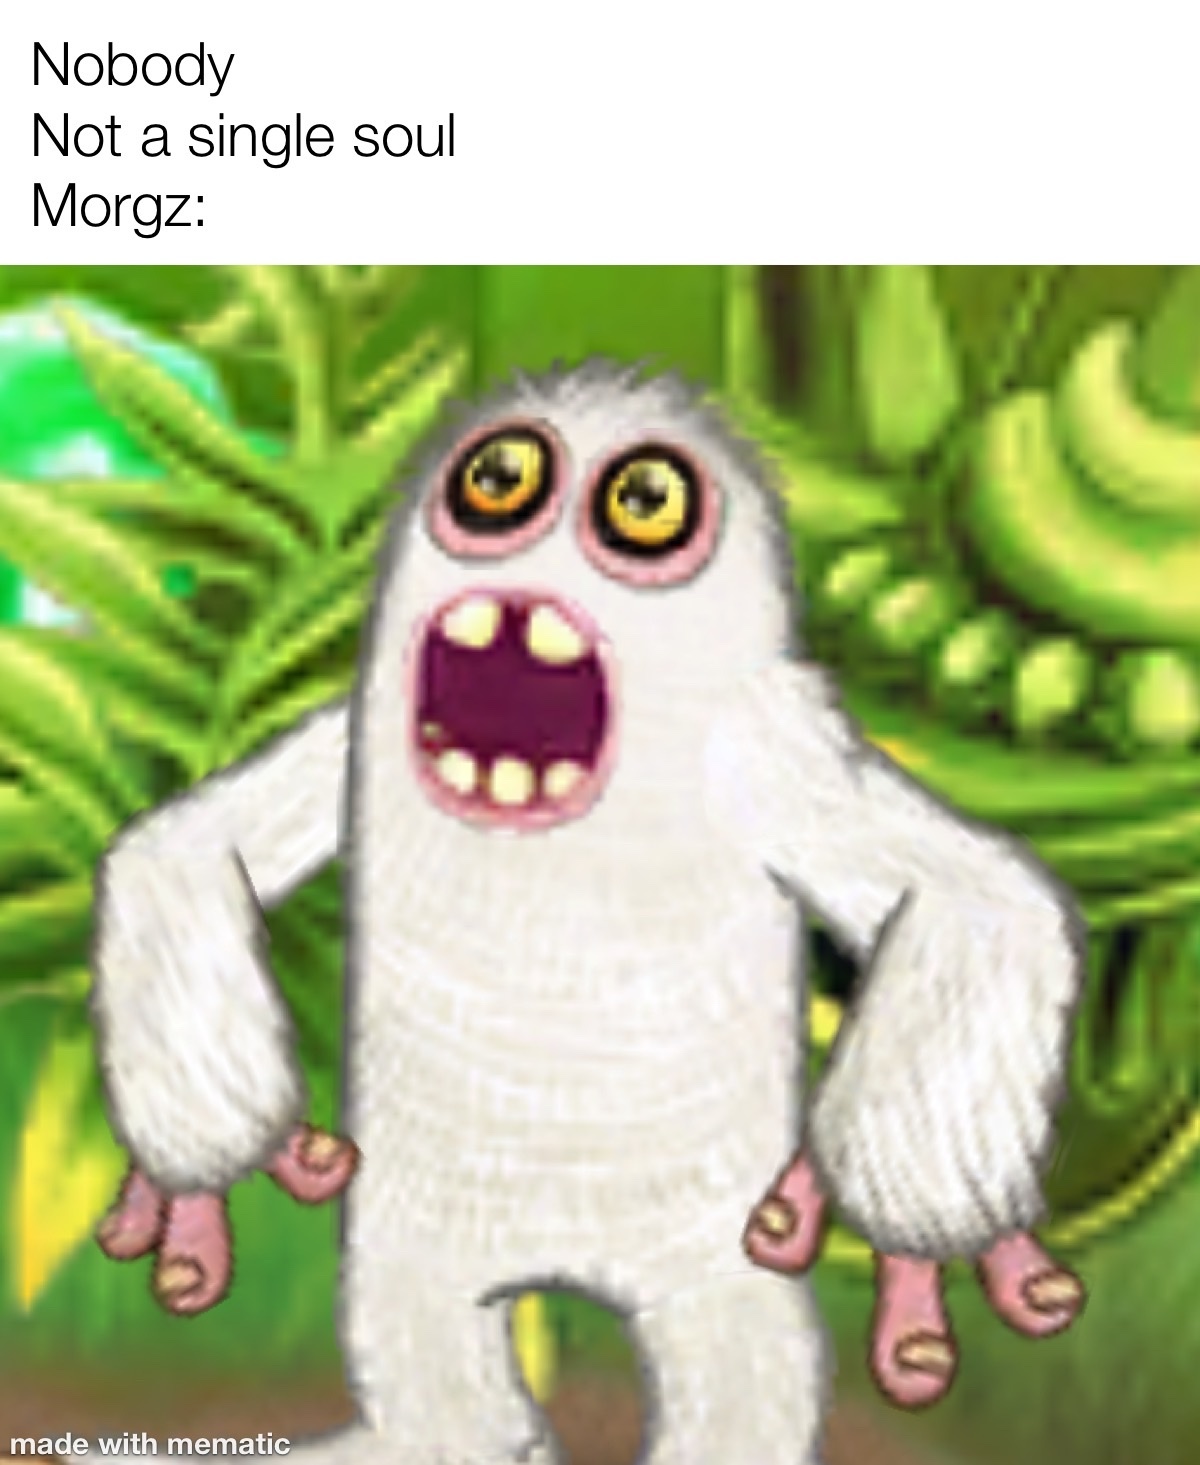 Morgz - meme